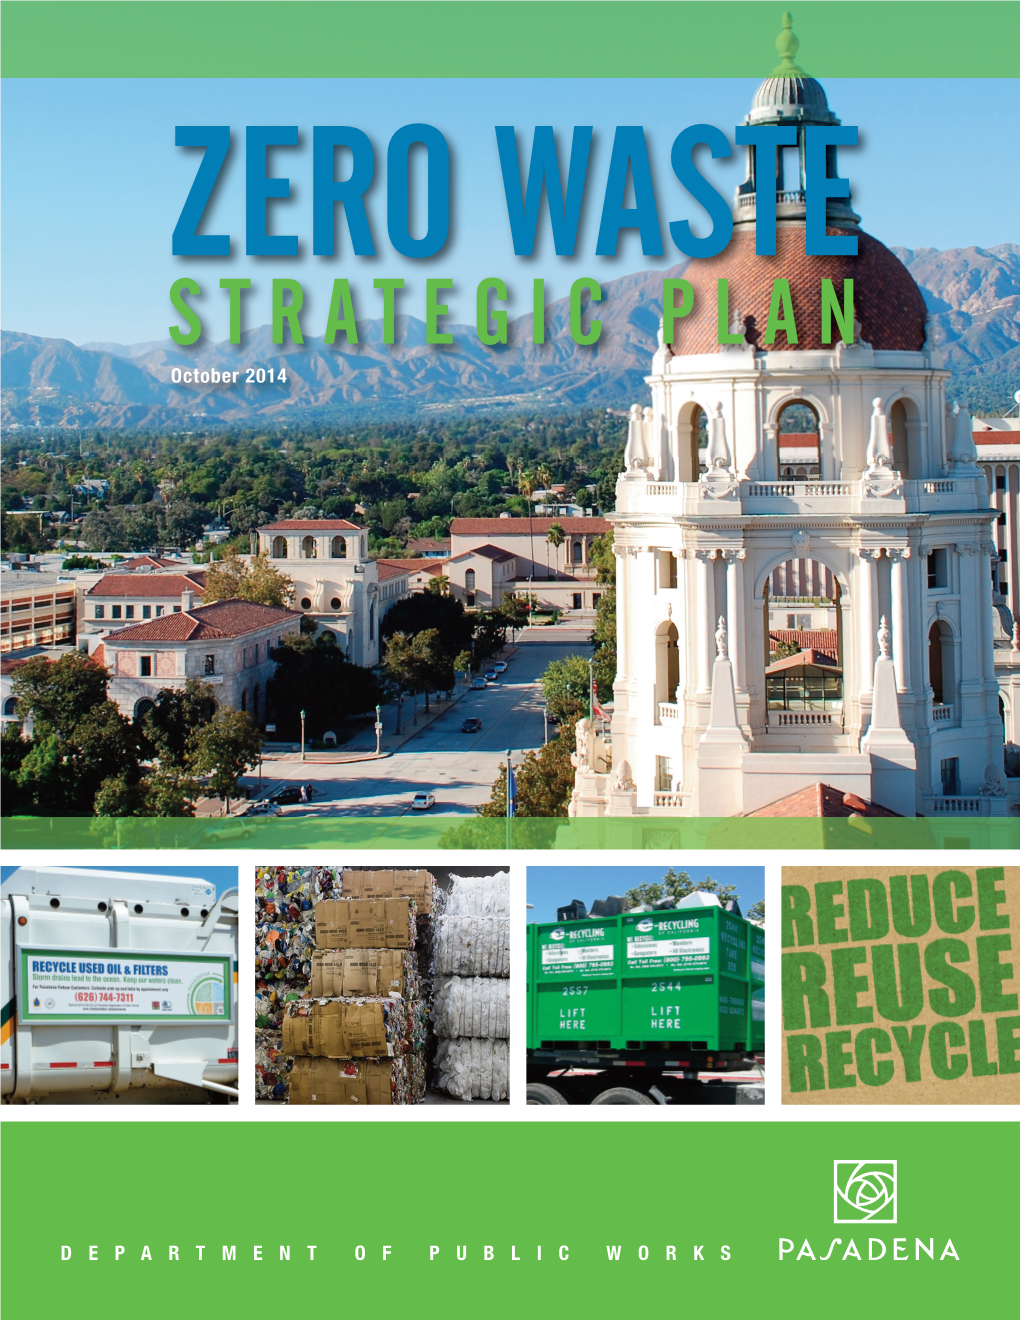 Zero Waste Strategic Plan222:Layout 1 10/13/14 3:20 PM Page 1 Zero Waste Strategic Plan October 2014